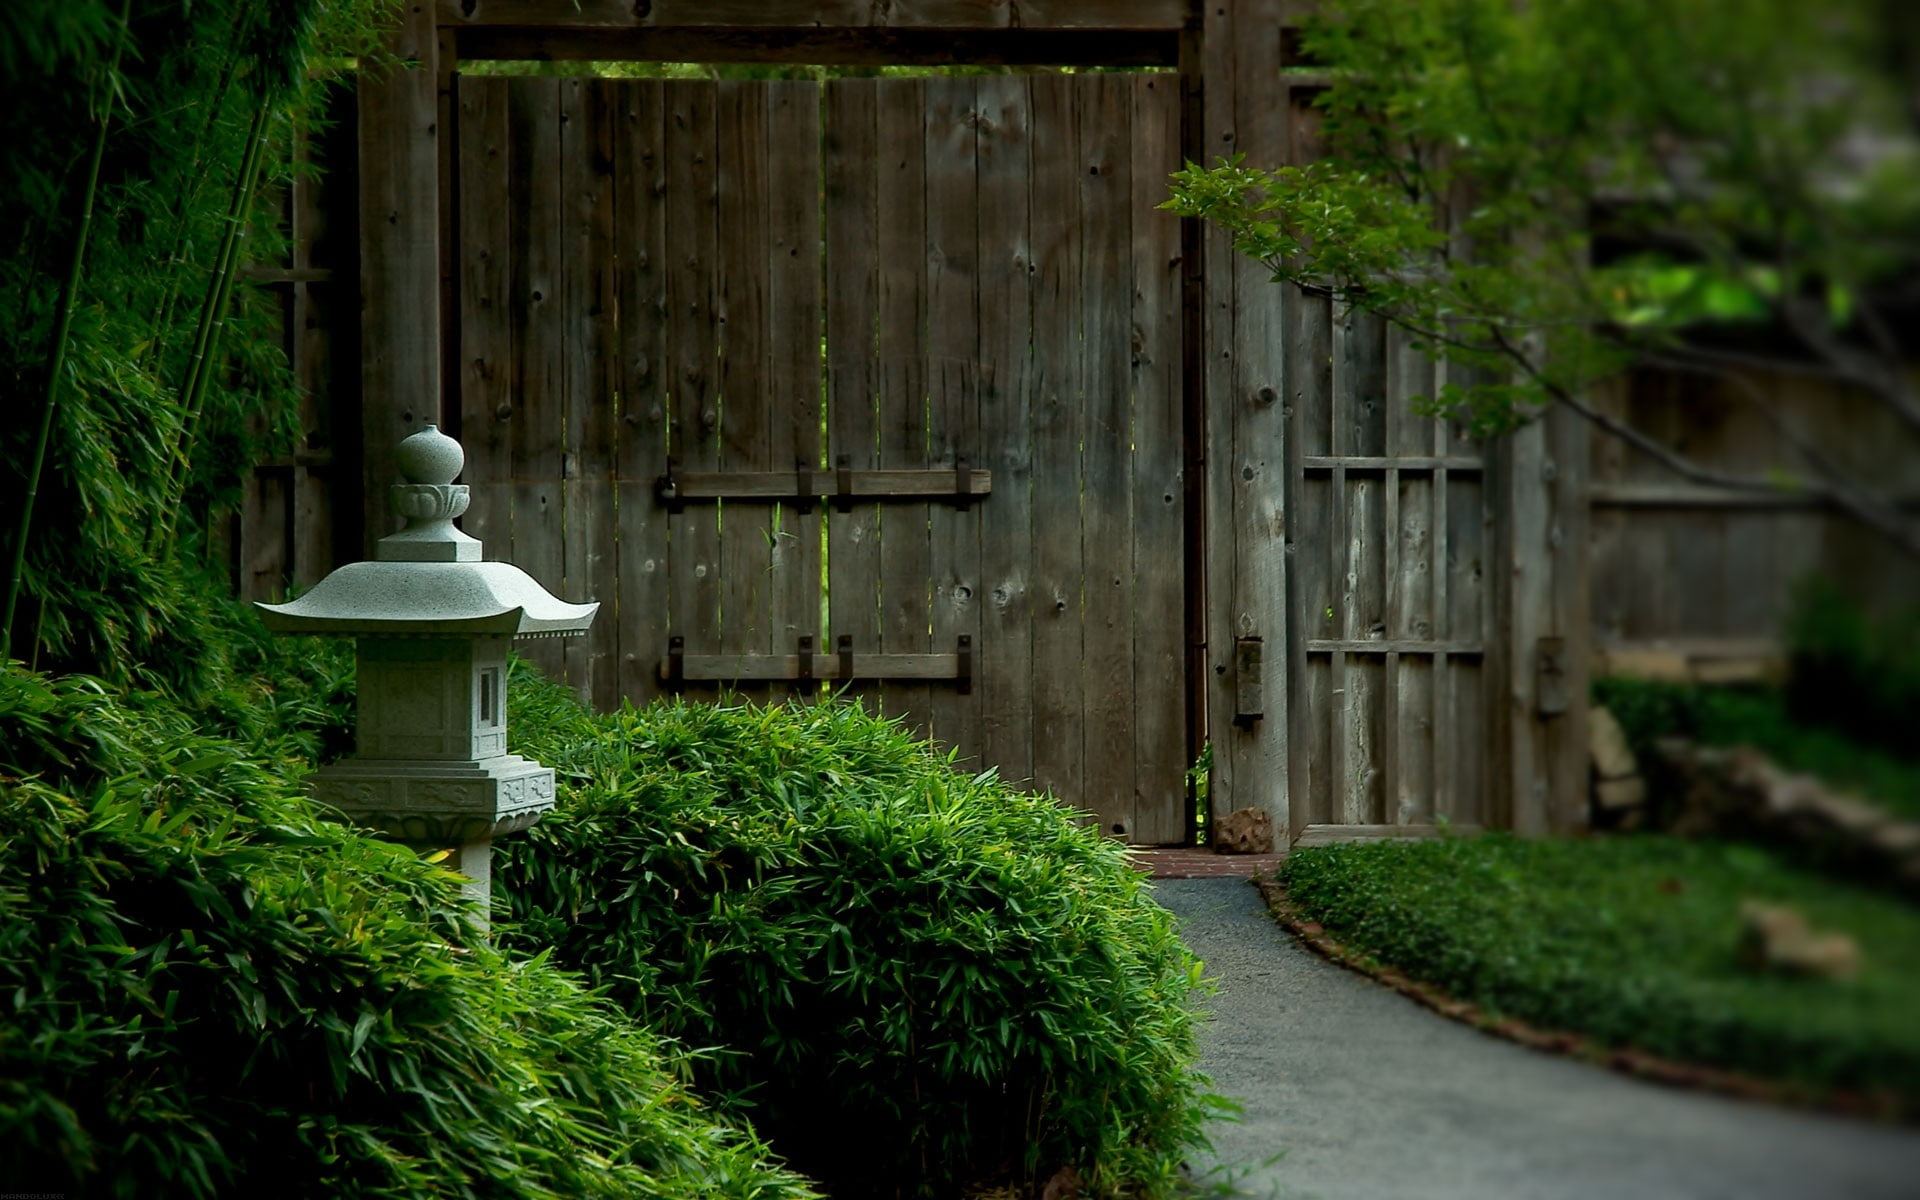 Nature, Japanese Garden, Japan, Plants, Wooden Door, brown wooden door and grey concrete miniature house